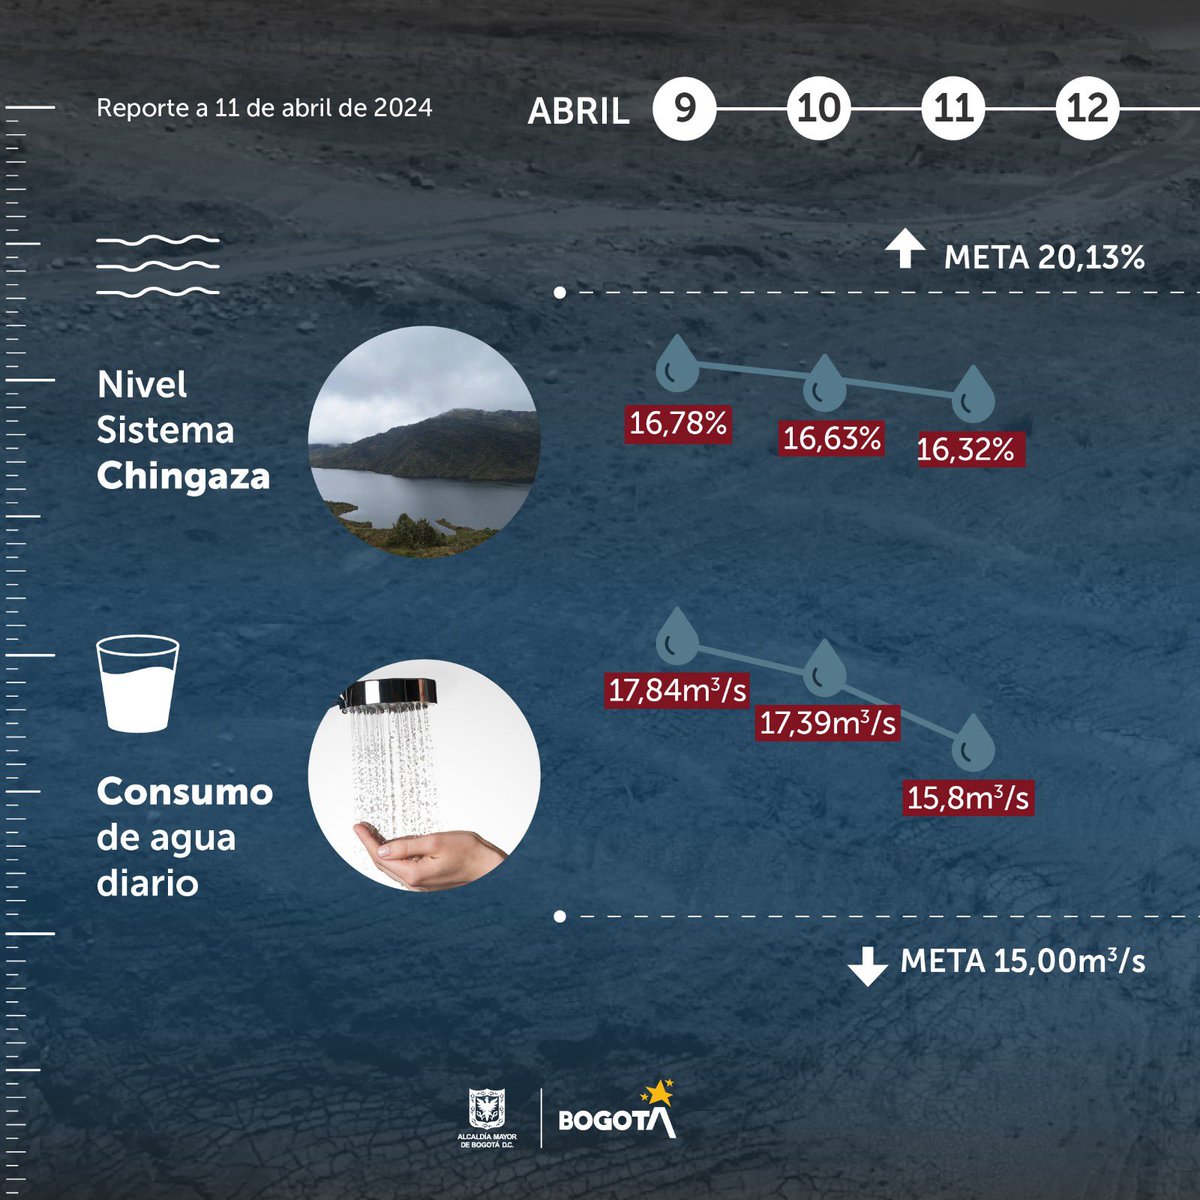 En Bogotá ya empezaron los turnos de racionamiento de agua y #JuntosPorElAgua vamos a mejorar estas cifras ⤵️ Datos: 11 de abril 💧Consumo: 15,8 m³/s 🏁Meta: 15 m³/s 🏞️ Sistema Chingaza: 47,35 Mm3 (16,32 %) 🏁 Meta 30 de abril: 57,96 Mm3 (20,13 %)